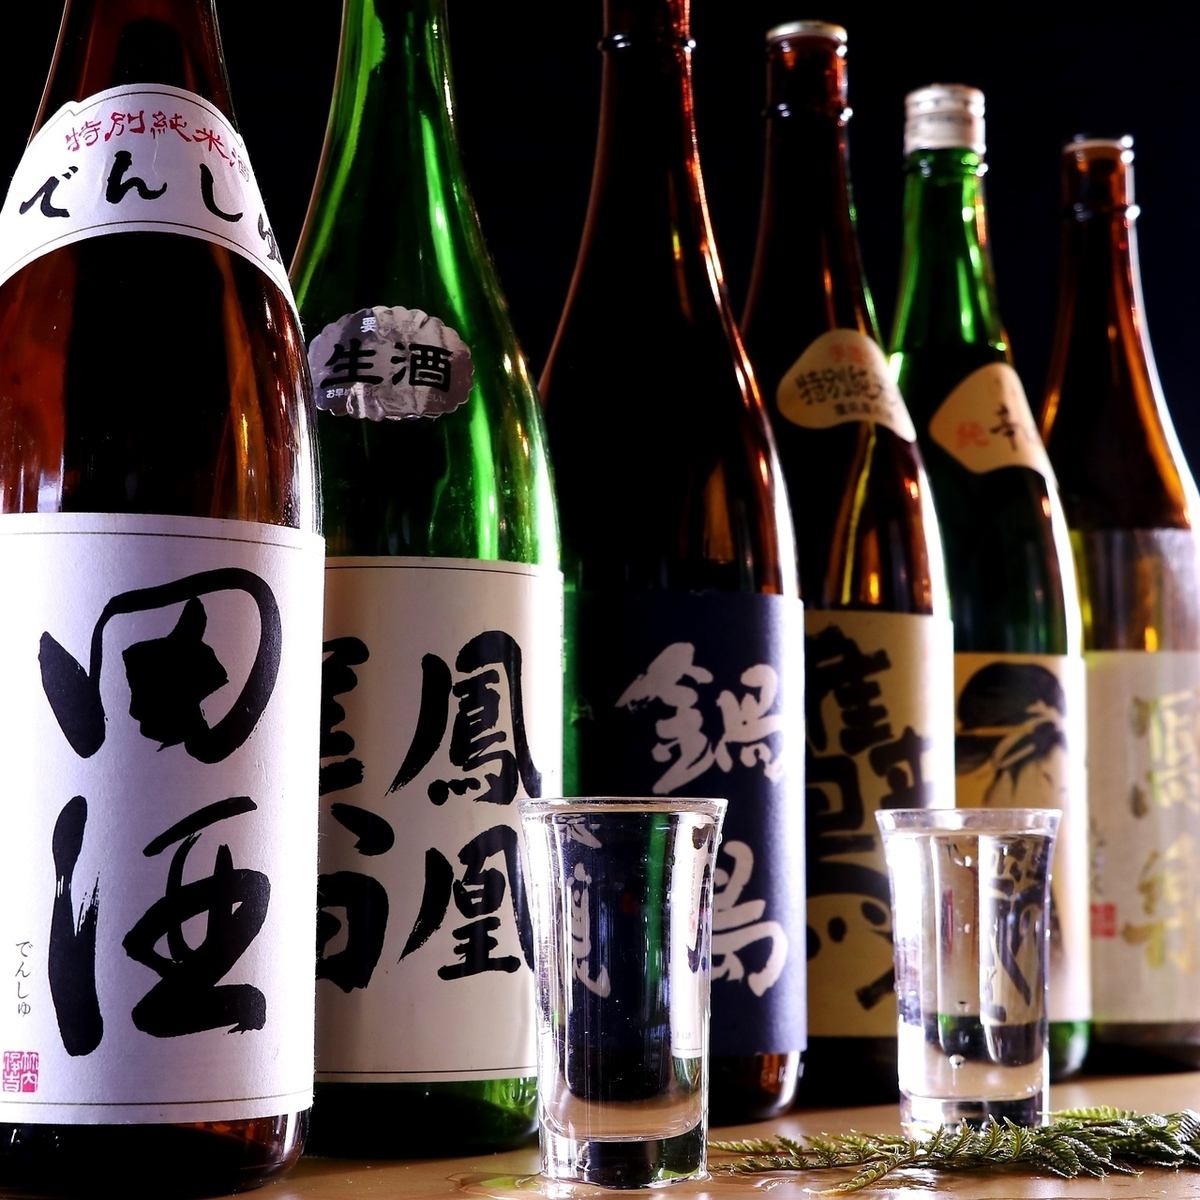 另外，还有电烧、写乐等人气高级日本酒的无限畅饮方案。